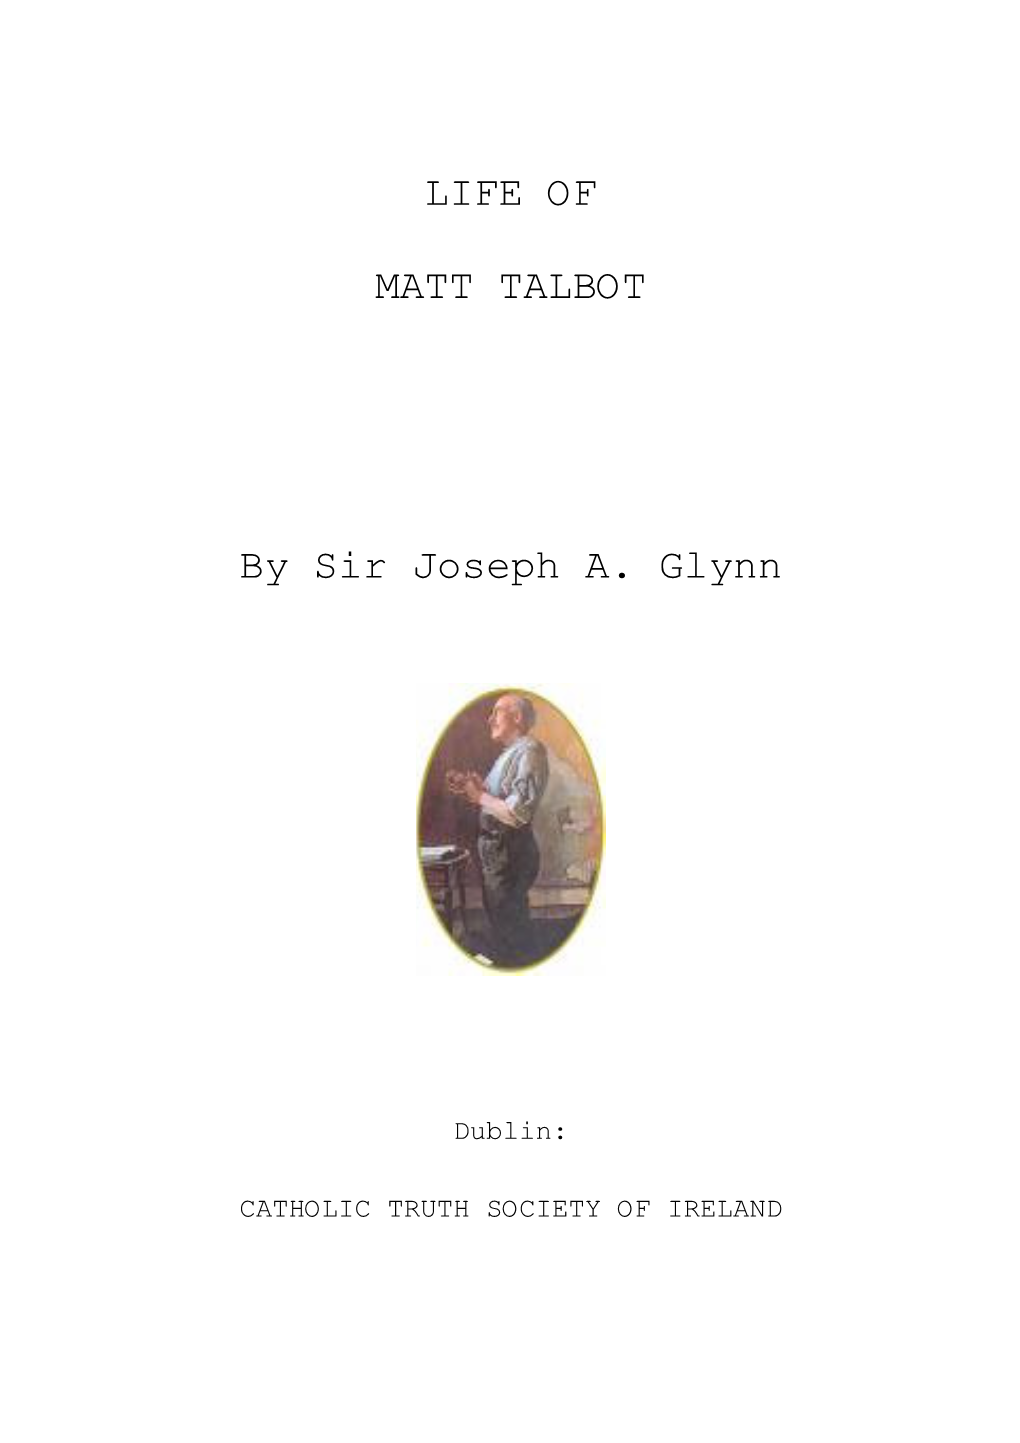 LIFE of MATT TALBOT by Sir Joseph A. Glynn